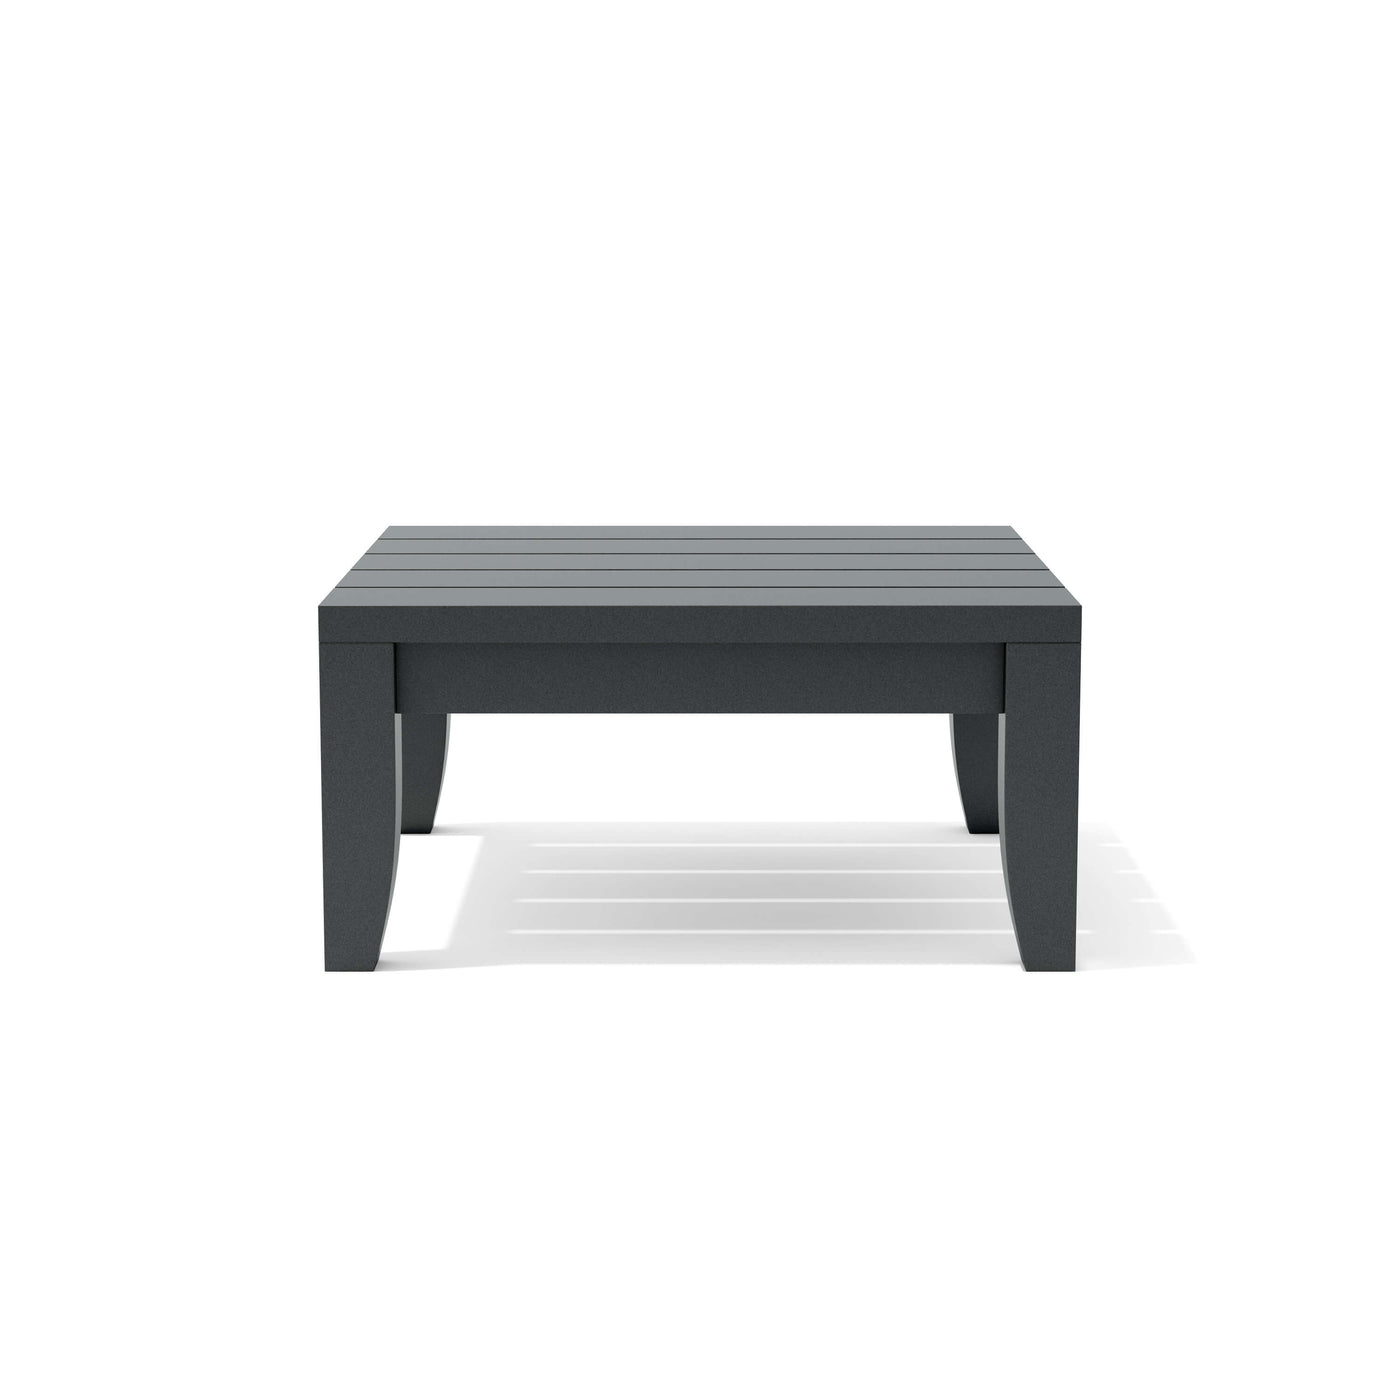 Coronado Aluminum Side Table